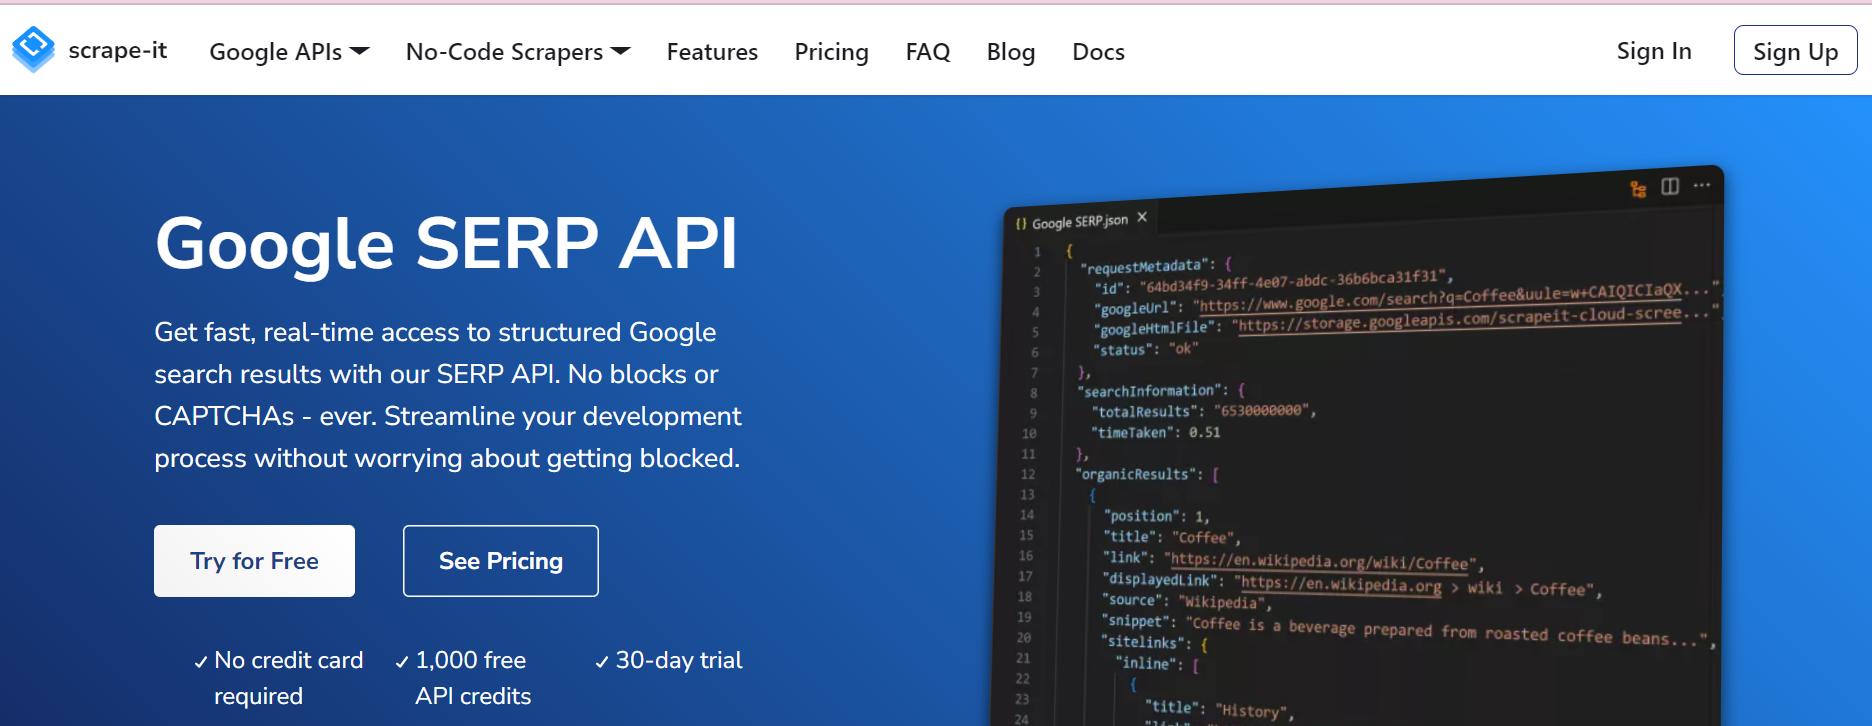 API поисковой выдачи SCRAPE-IT.CLOUD